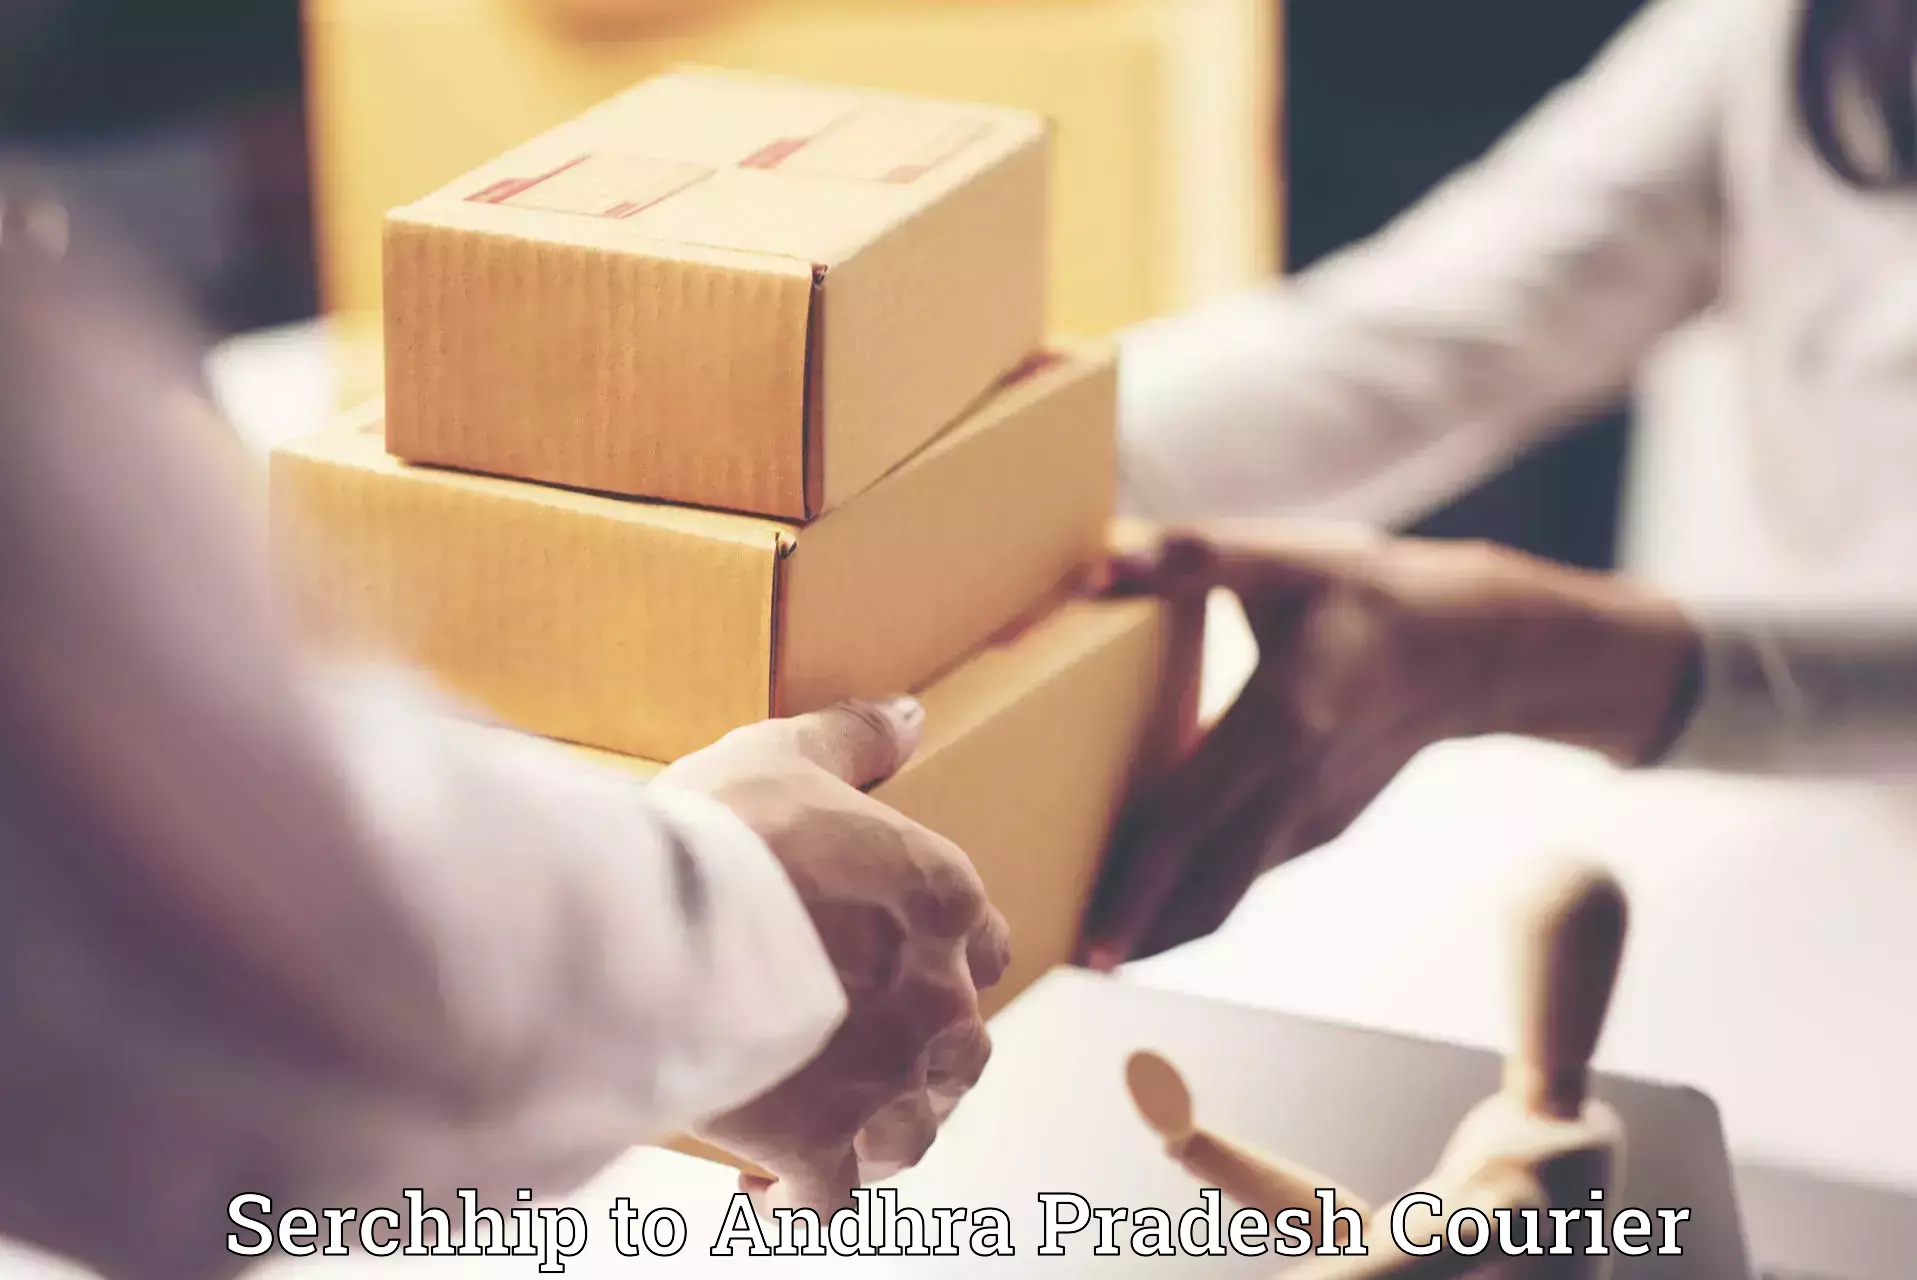 Furniture moving plans Serchhip to Andhra Pradesh